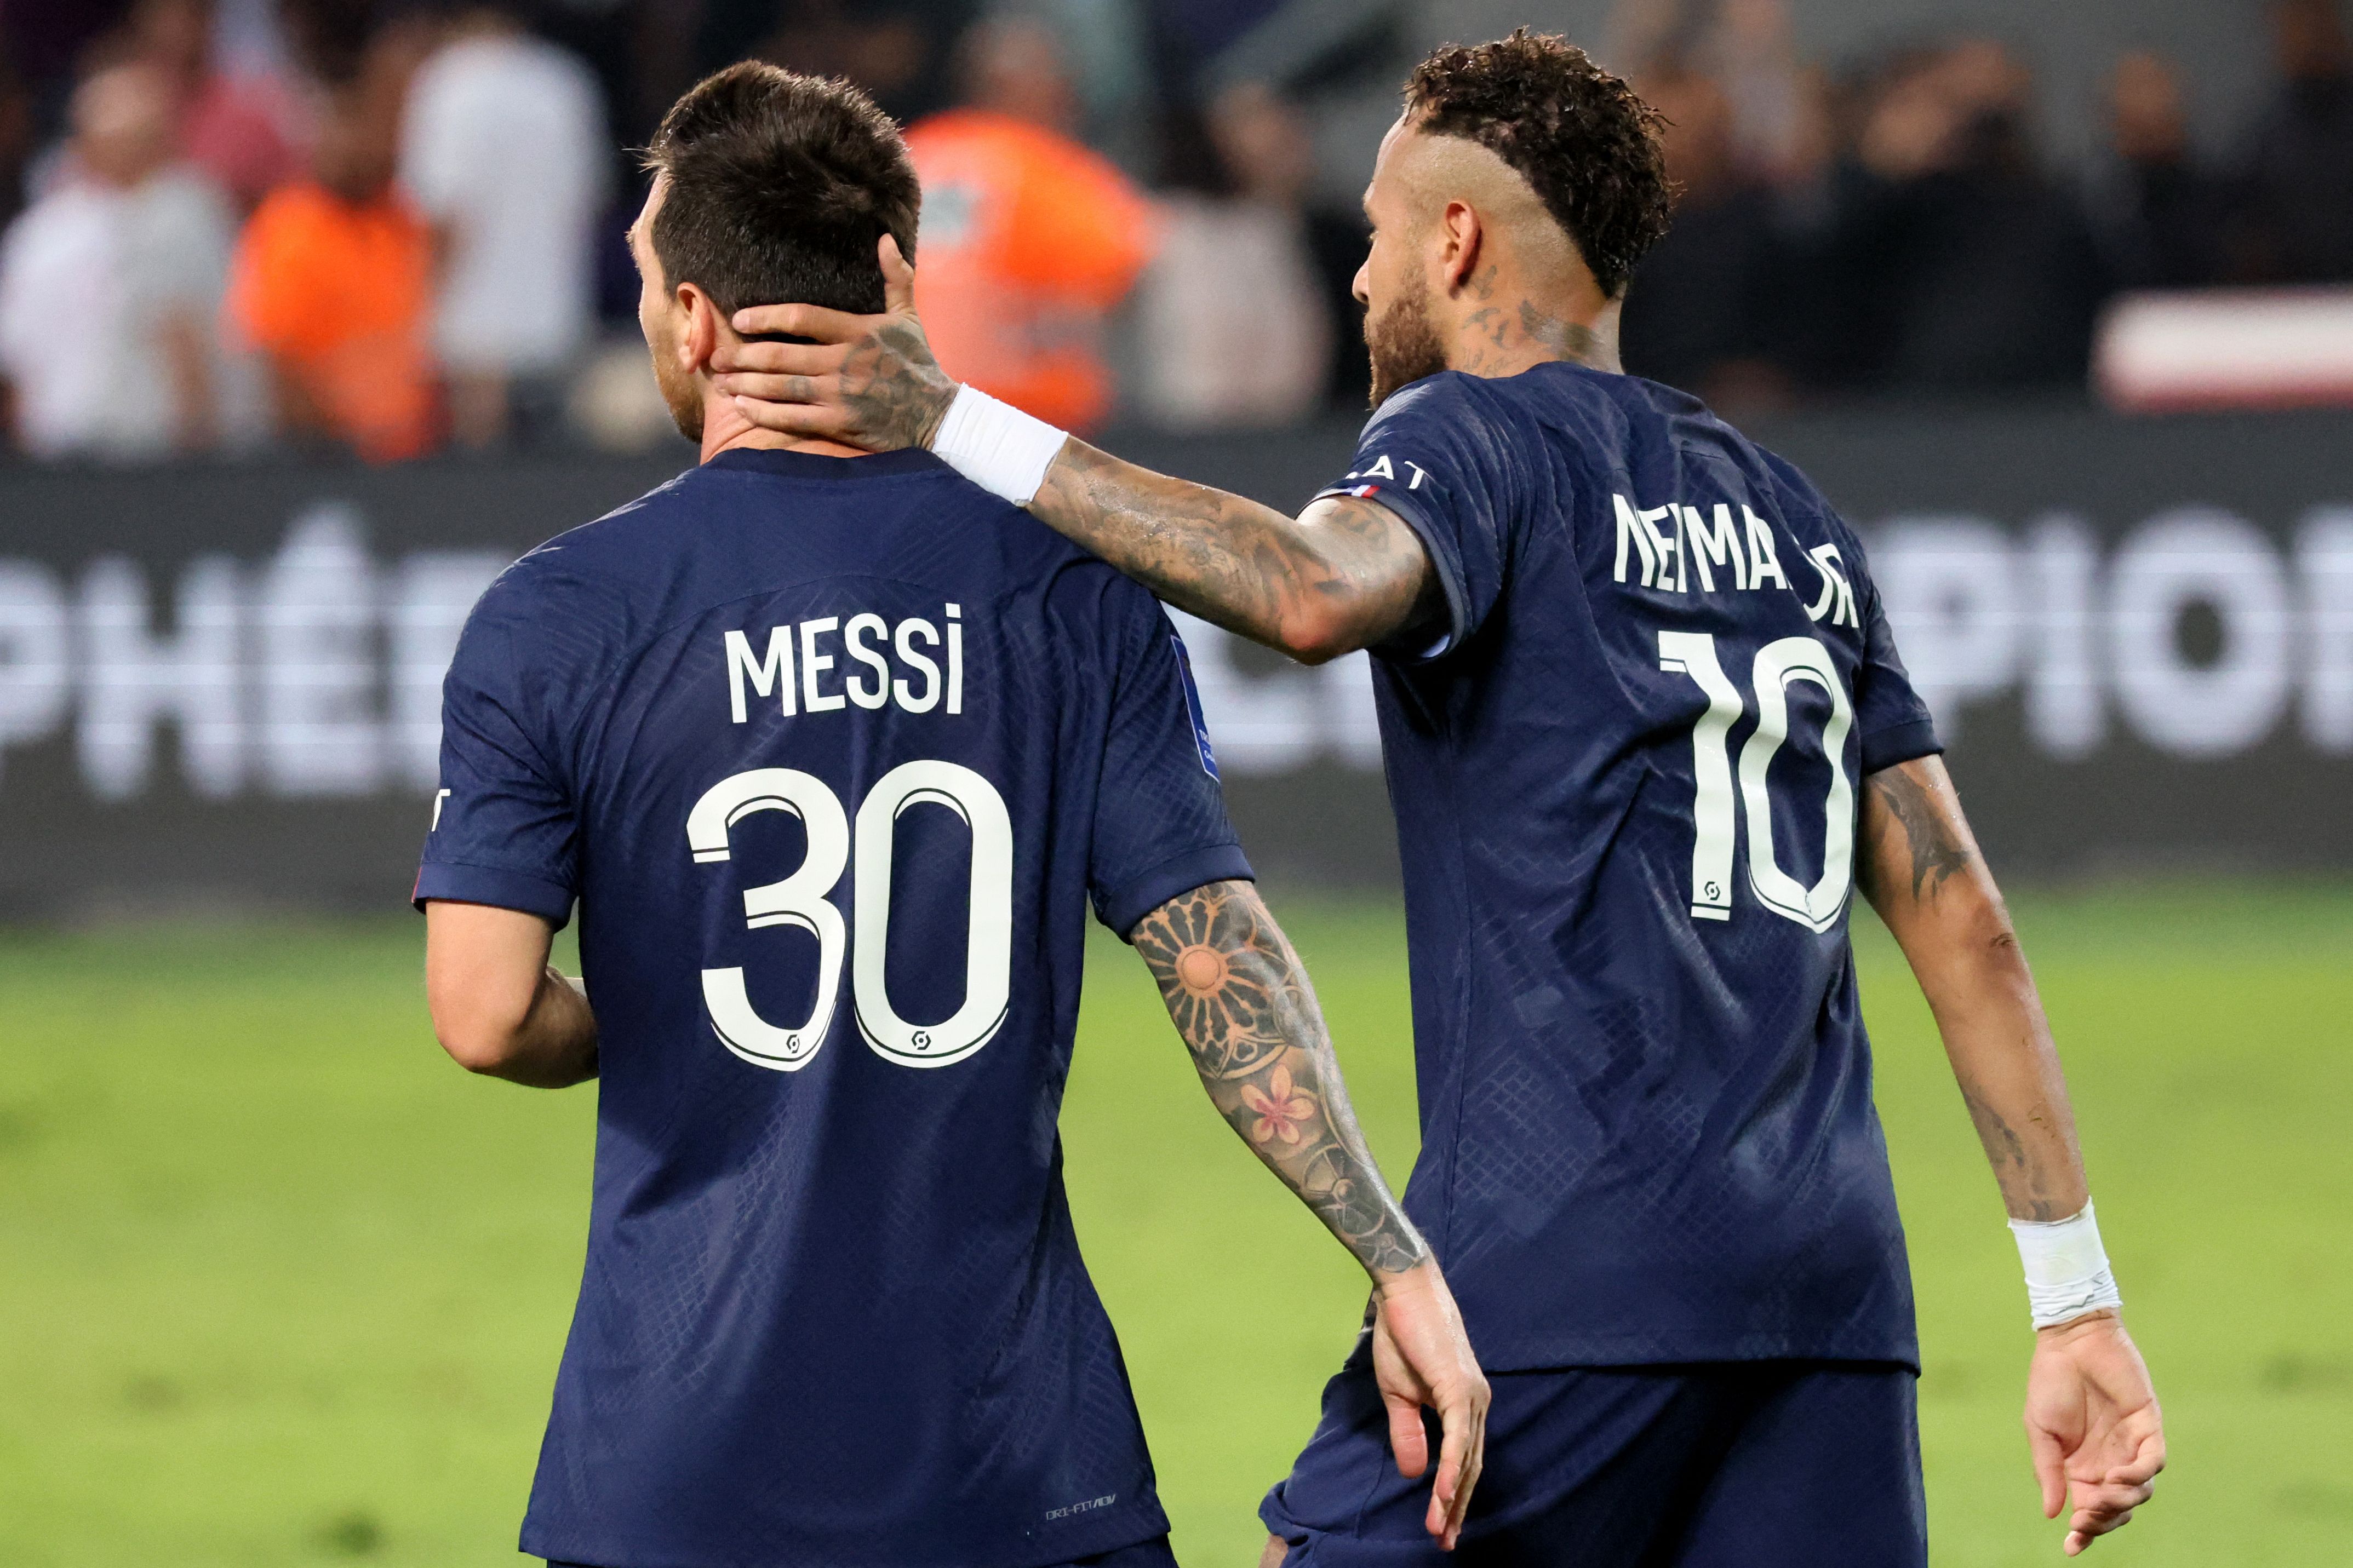 Messi dan Neymar Antar PSG Juara Piala Super Prancis